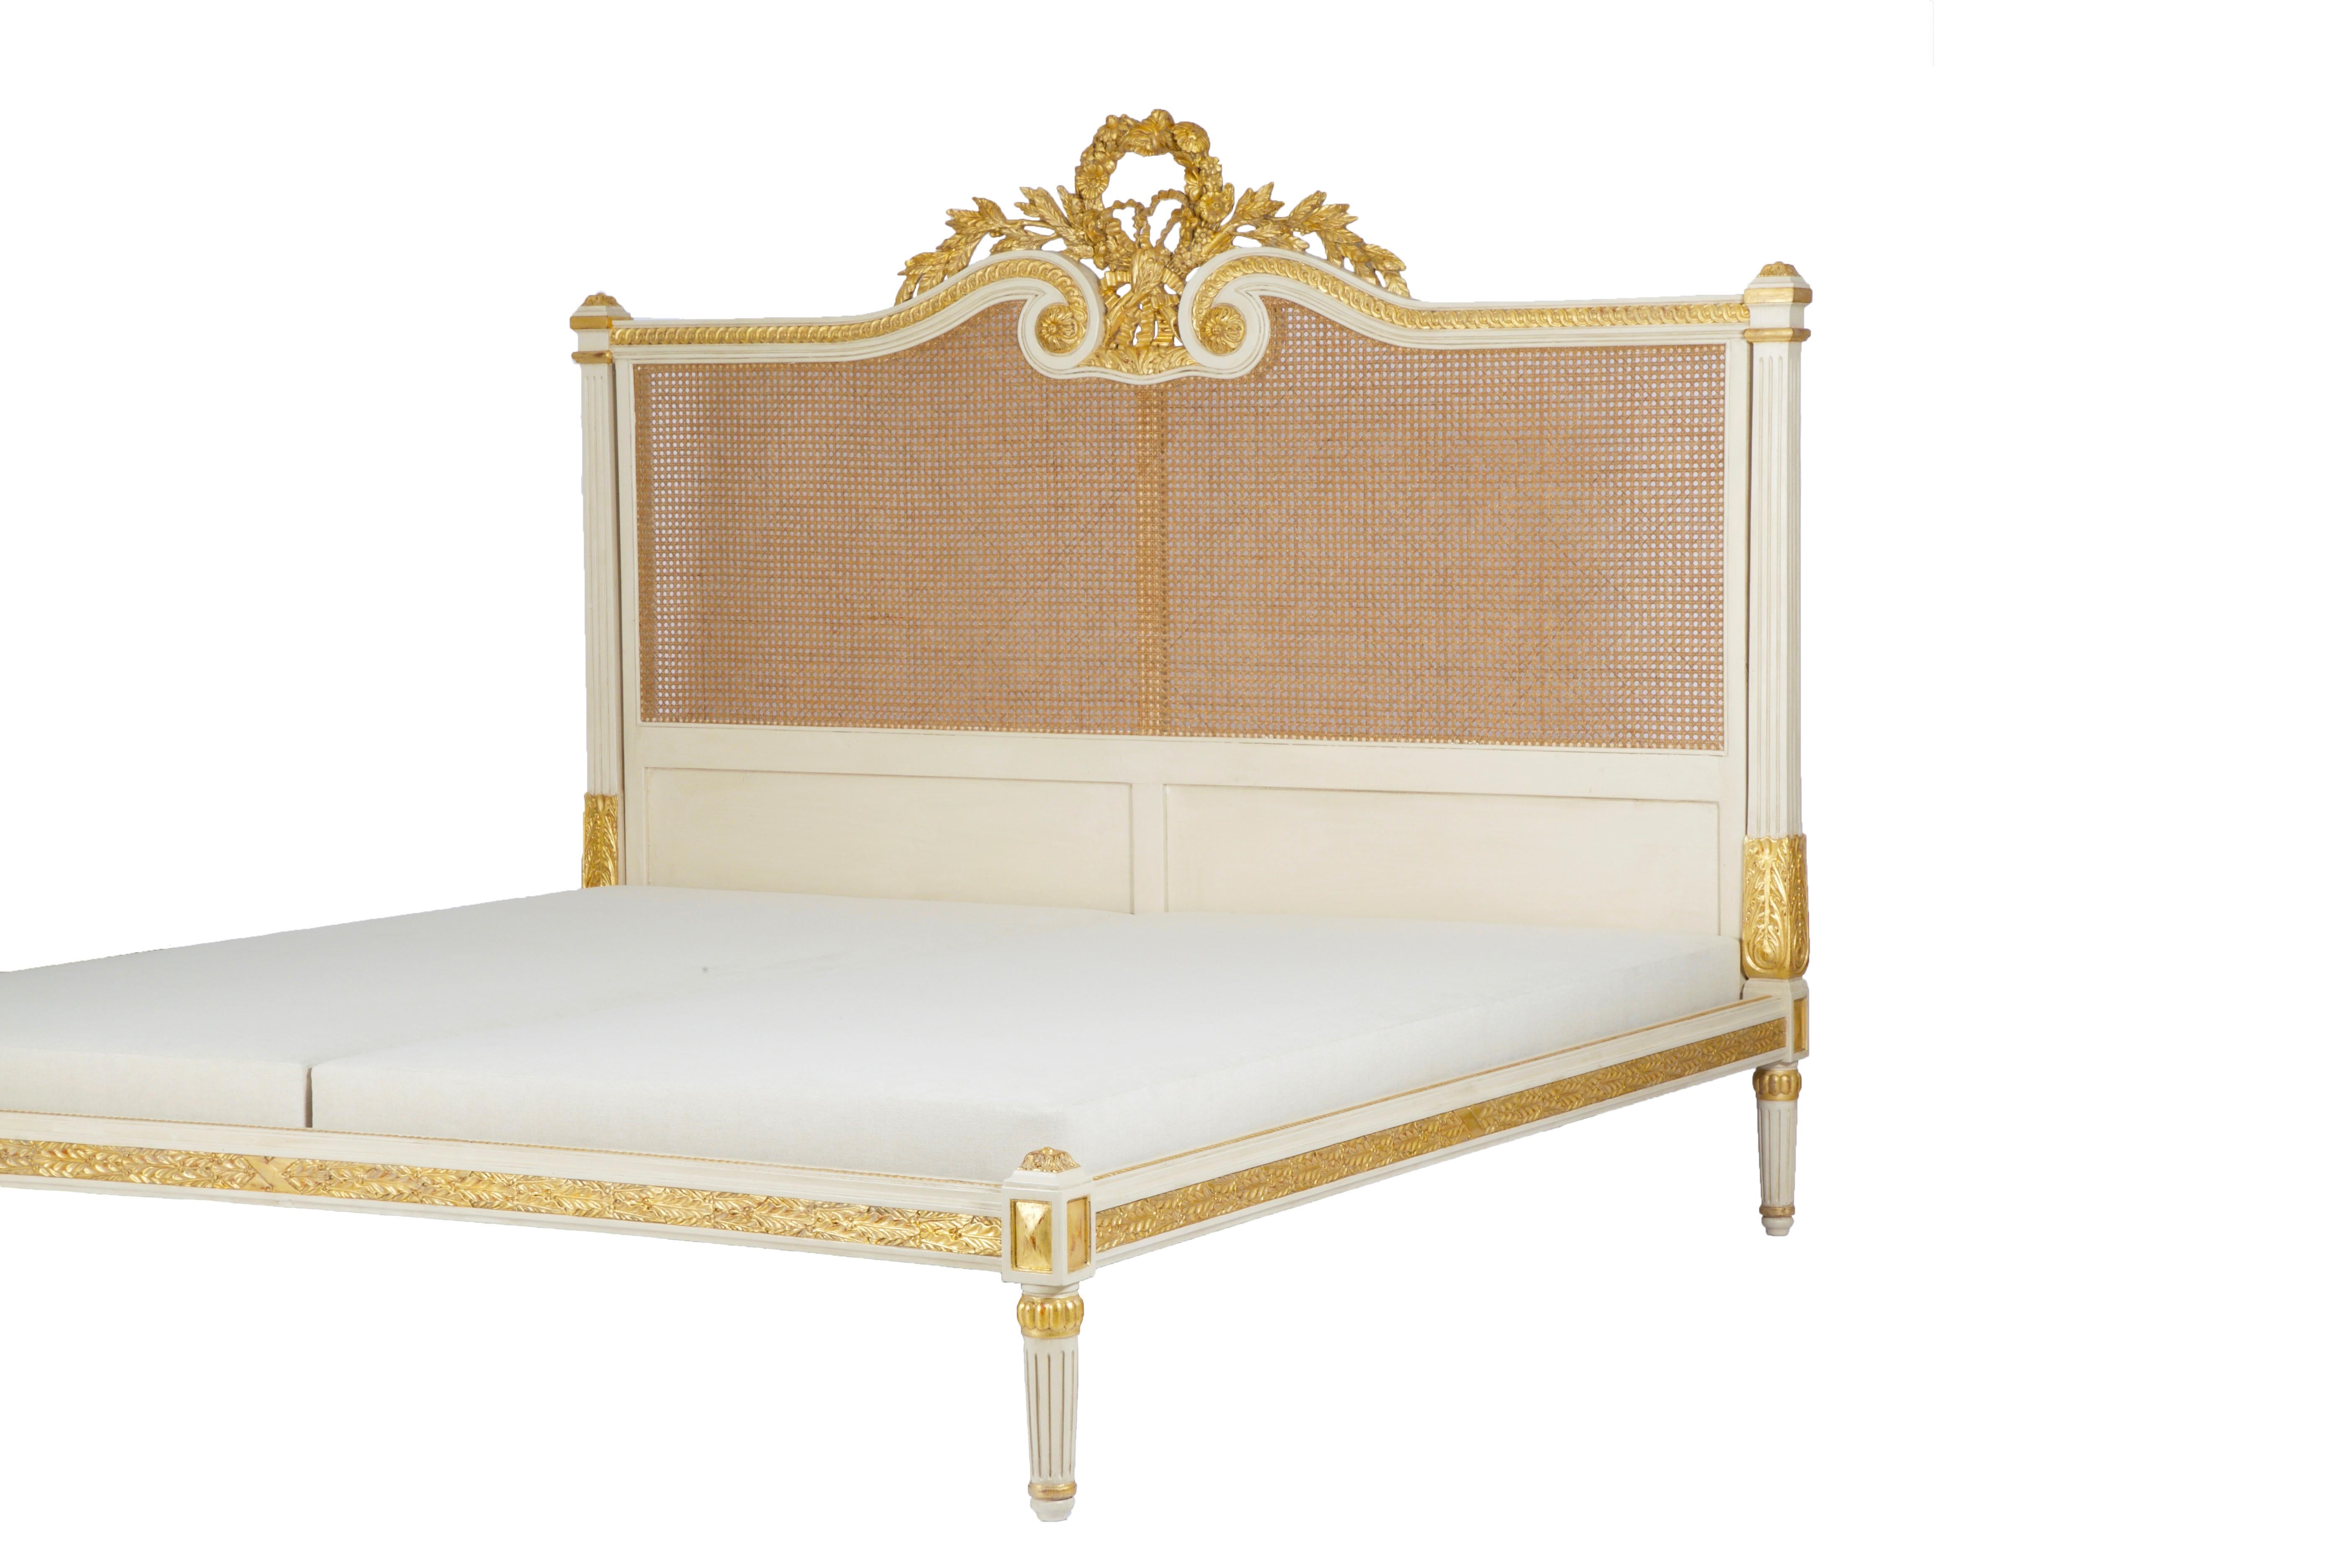 La cama Rosace es un elegante ejemplo del estilo francés LXVI. Con sus columnas clásicas y su sobria ornamentación, el somier se mantiene erguido y desprende una noble confianza. El vértice del cabecero tiene un rosetón meticulosamente tallado que